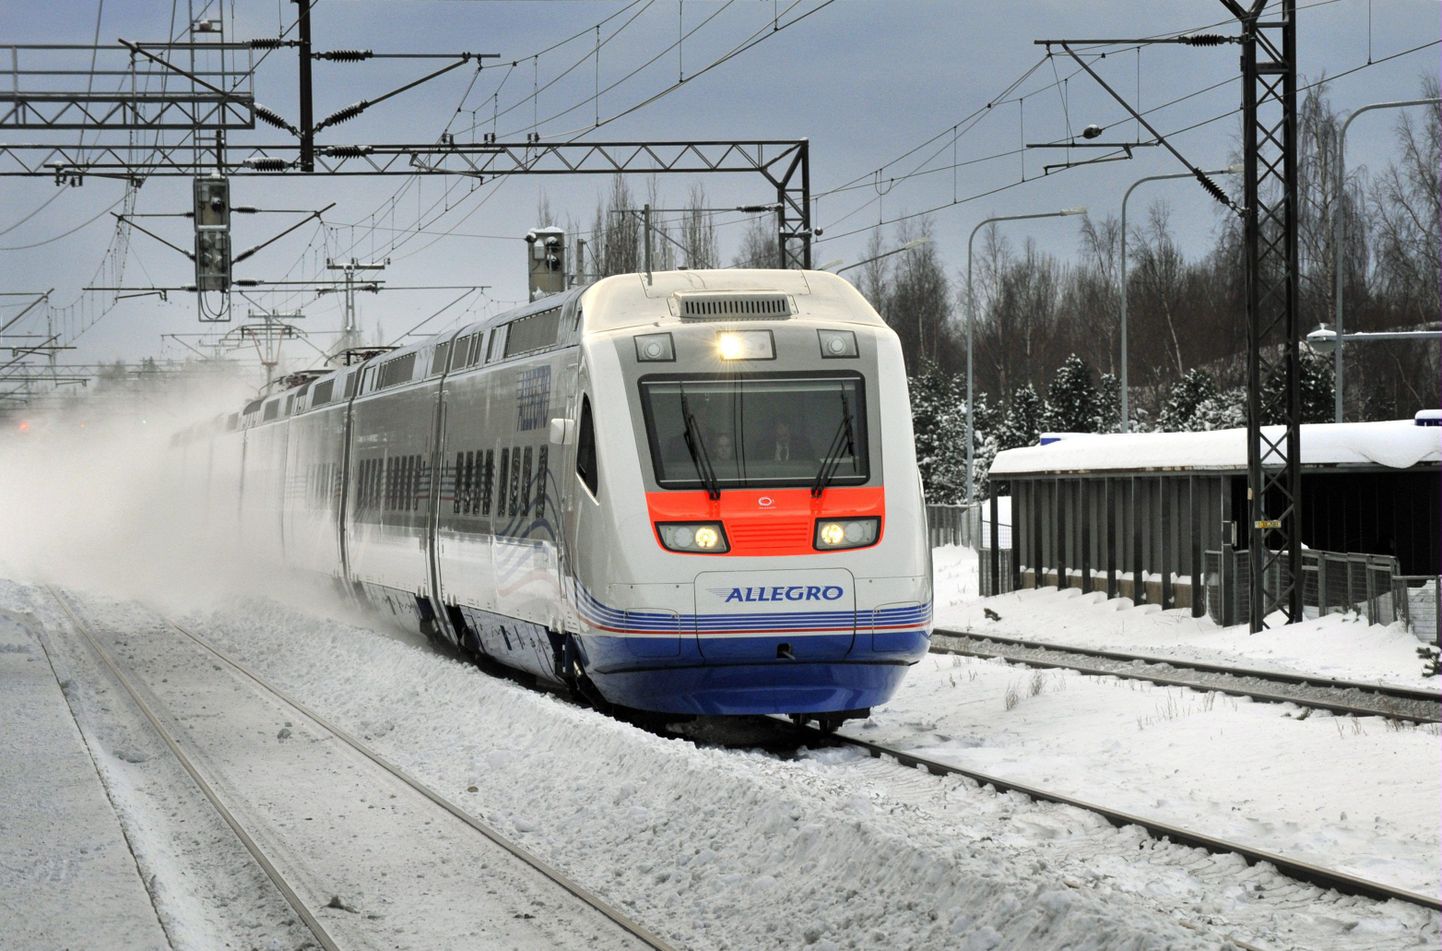 Helsingi-Peterburi liinil sõitev kiirrong Allegro